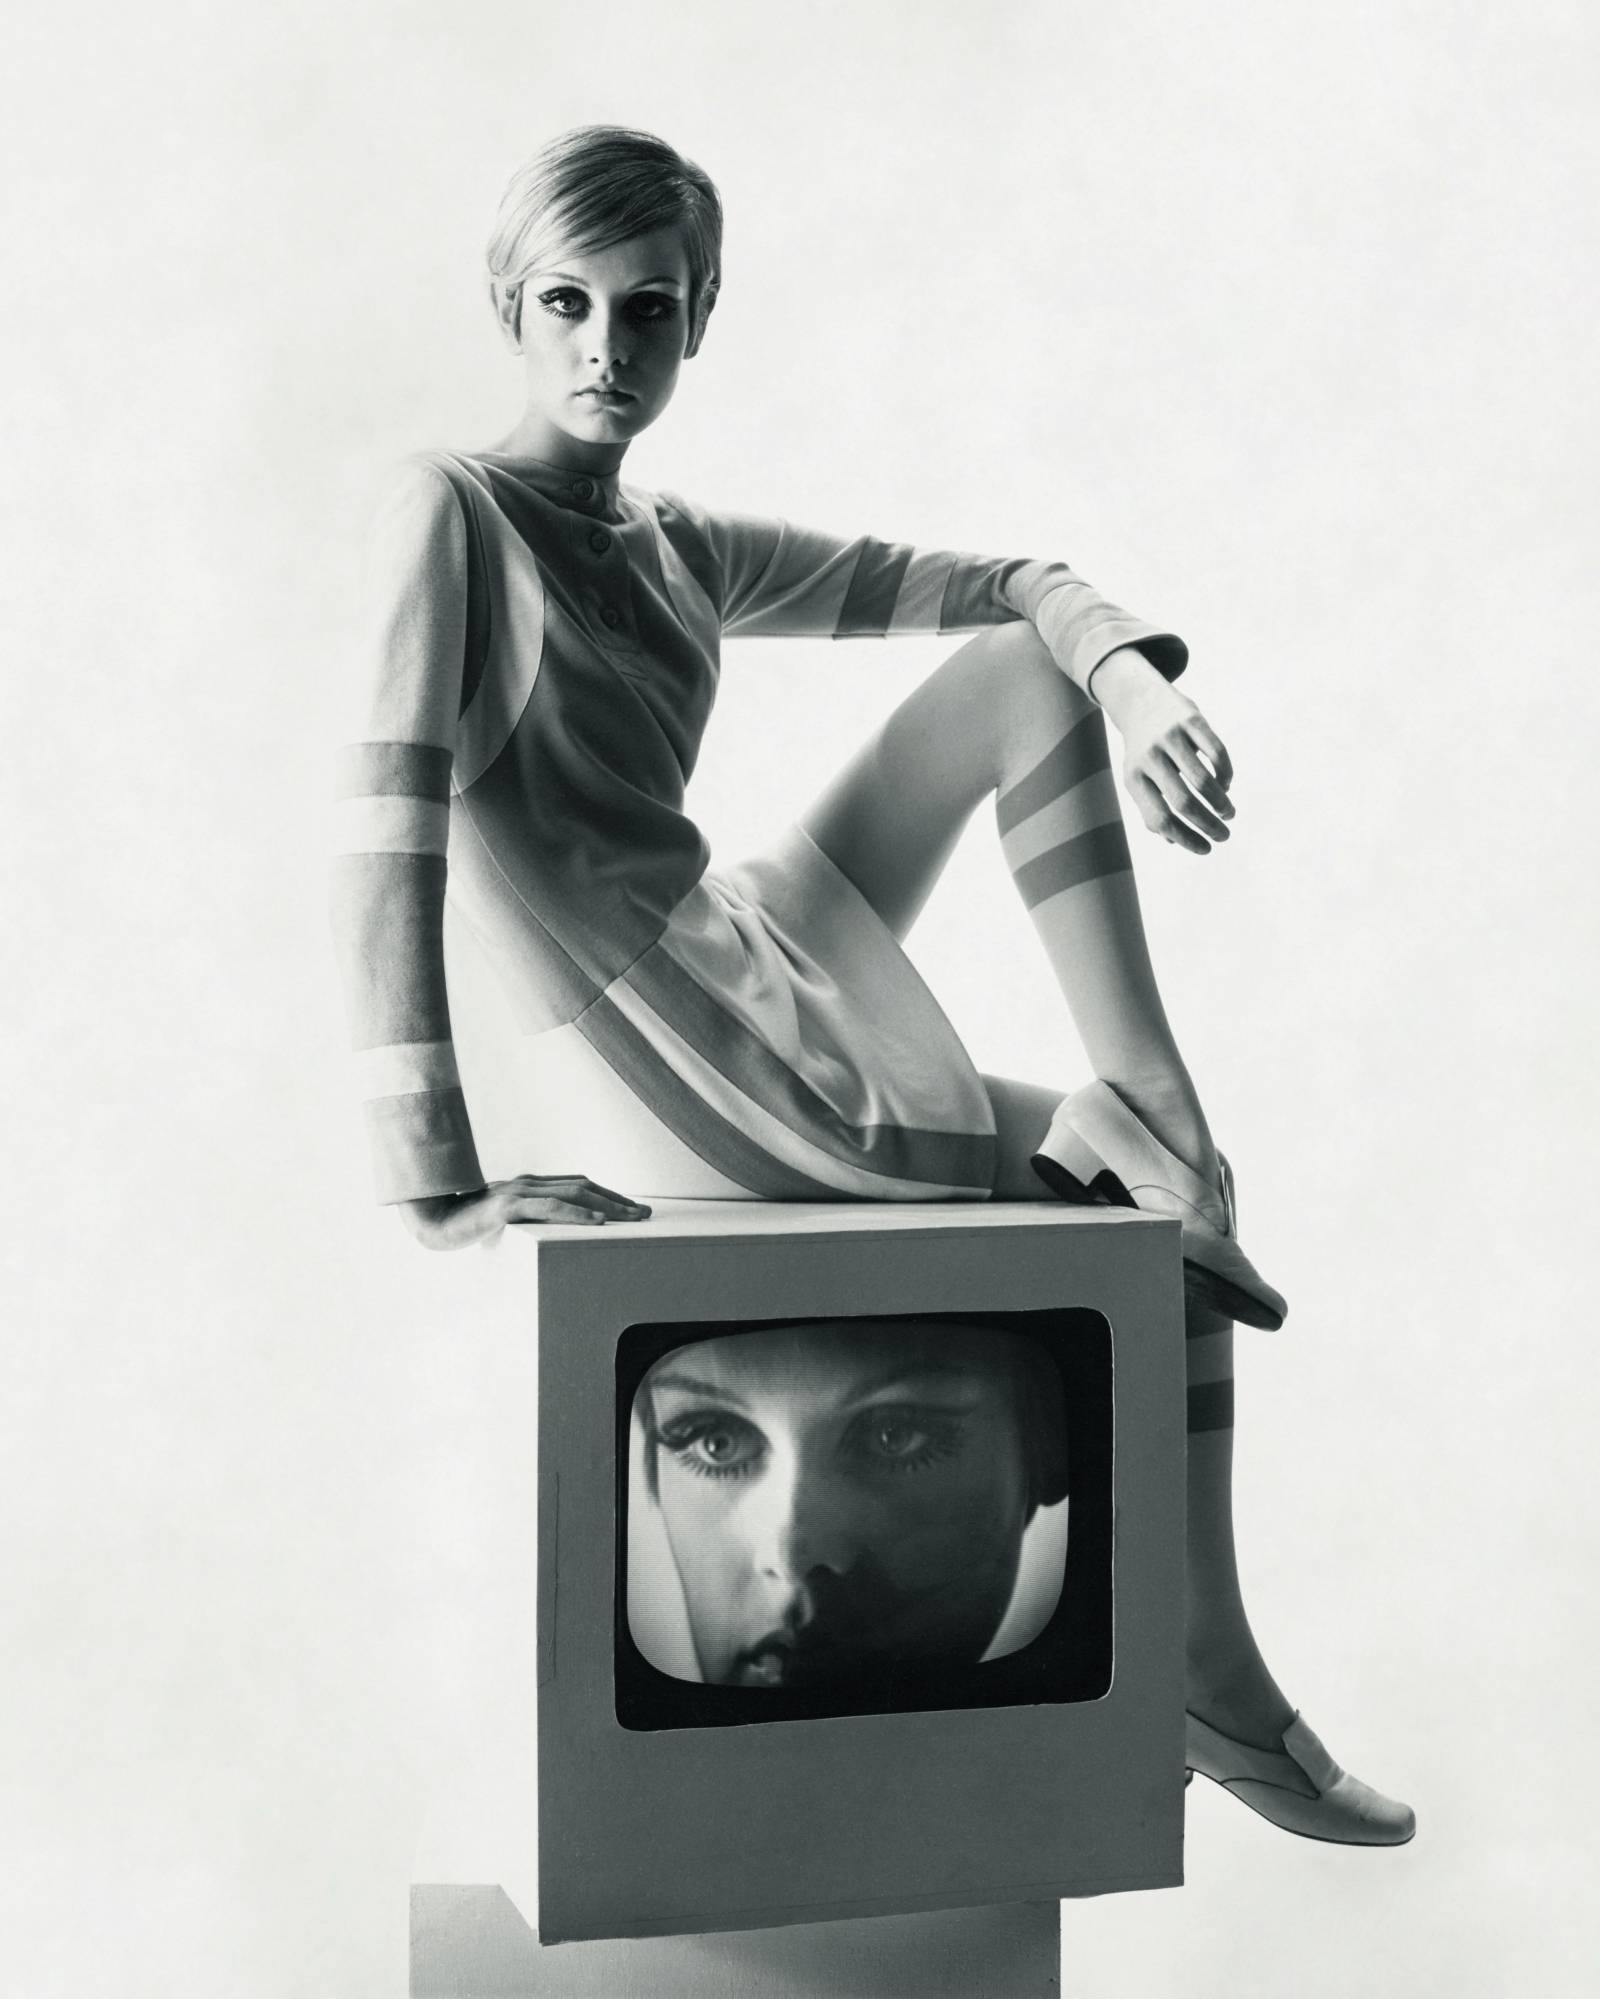 Fot. Bert Stern, Twiggy w minisukience, którą zaprojektował Louis Féraud i skórzanych pantoflach François Villon, Vogue, 1967© Condé Nast